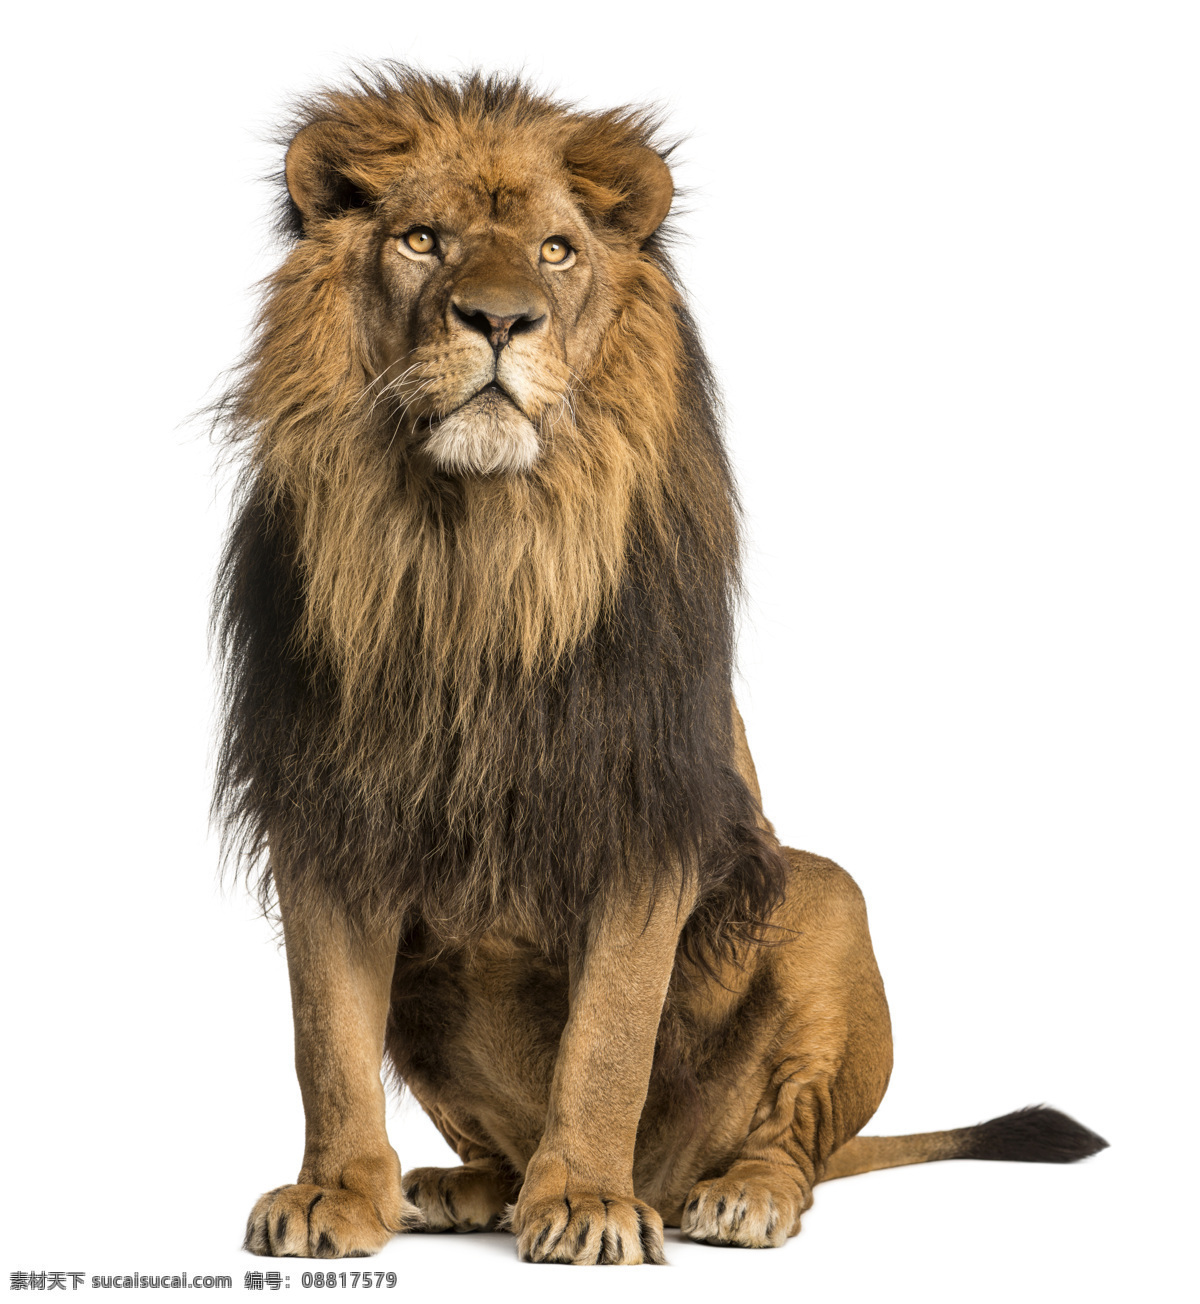 雄狮 狮子 威武 非洲狮 非洲动物 食肉动物 食物链 狮王 猛兽 猫科动物 野生动物 生物世界